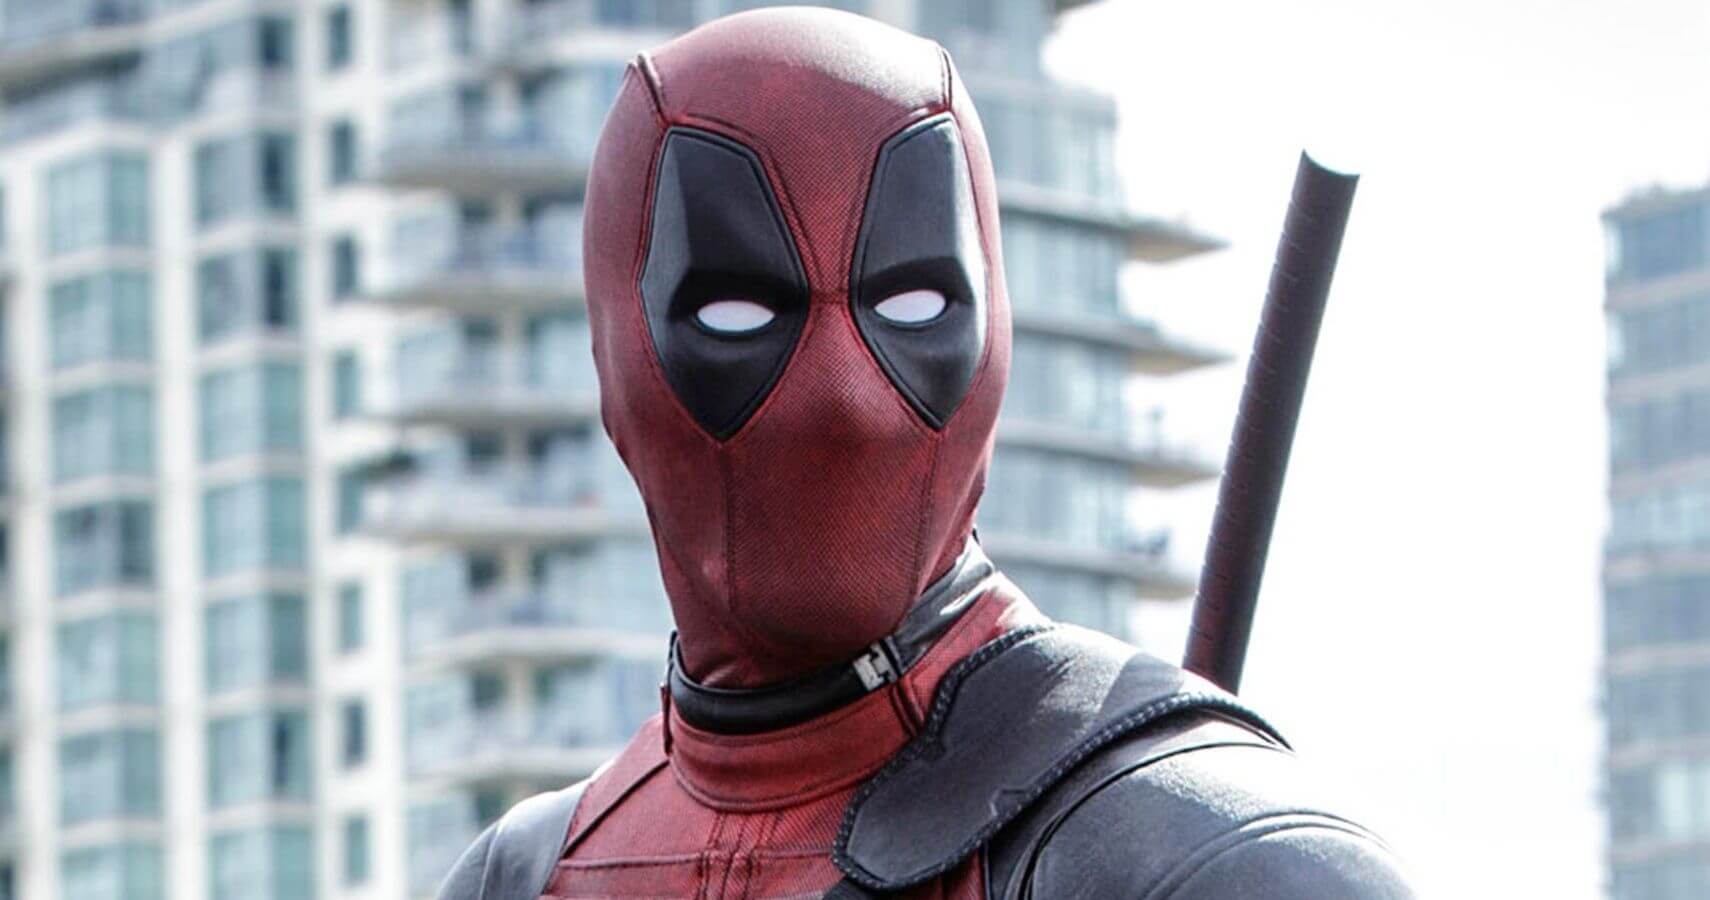 Ryan Reynoldsot arról kérdezték, mennyi esélyt lát, hogy jövőre forog a Deadpool 3.